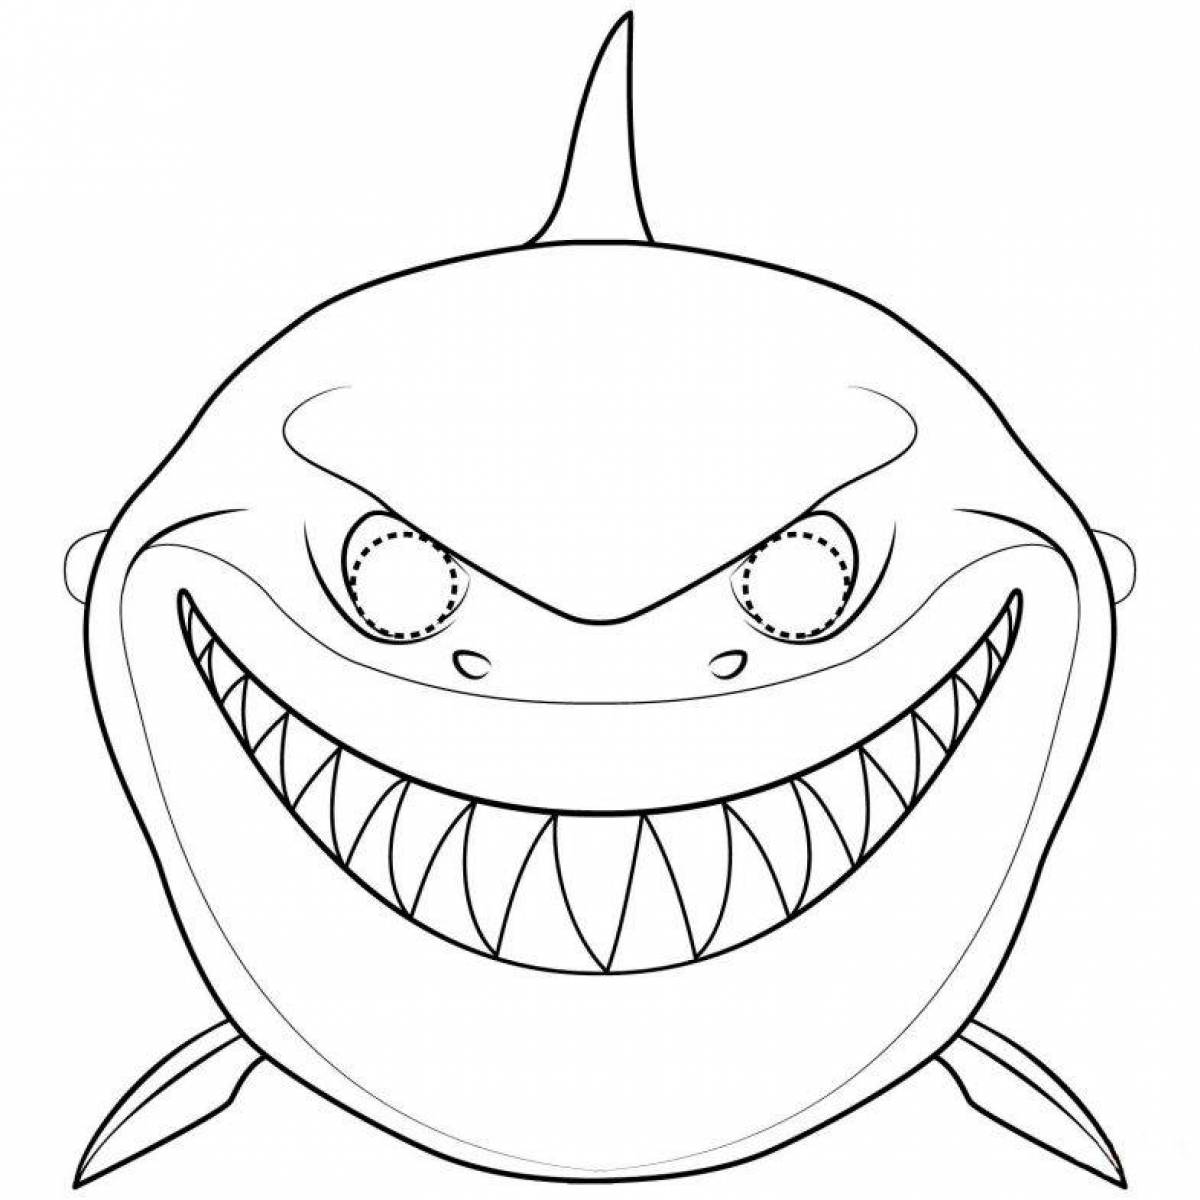 Творческая раскраска акулы для детей